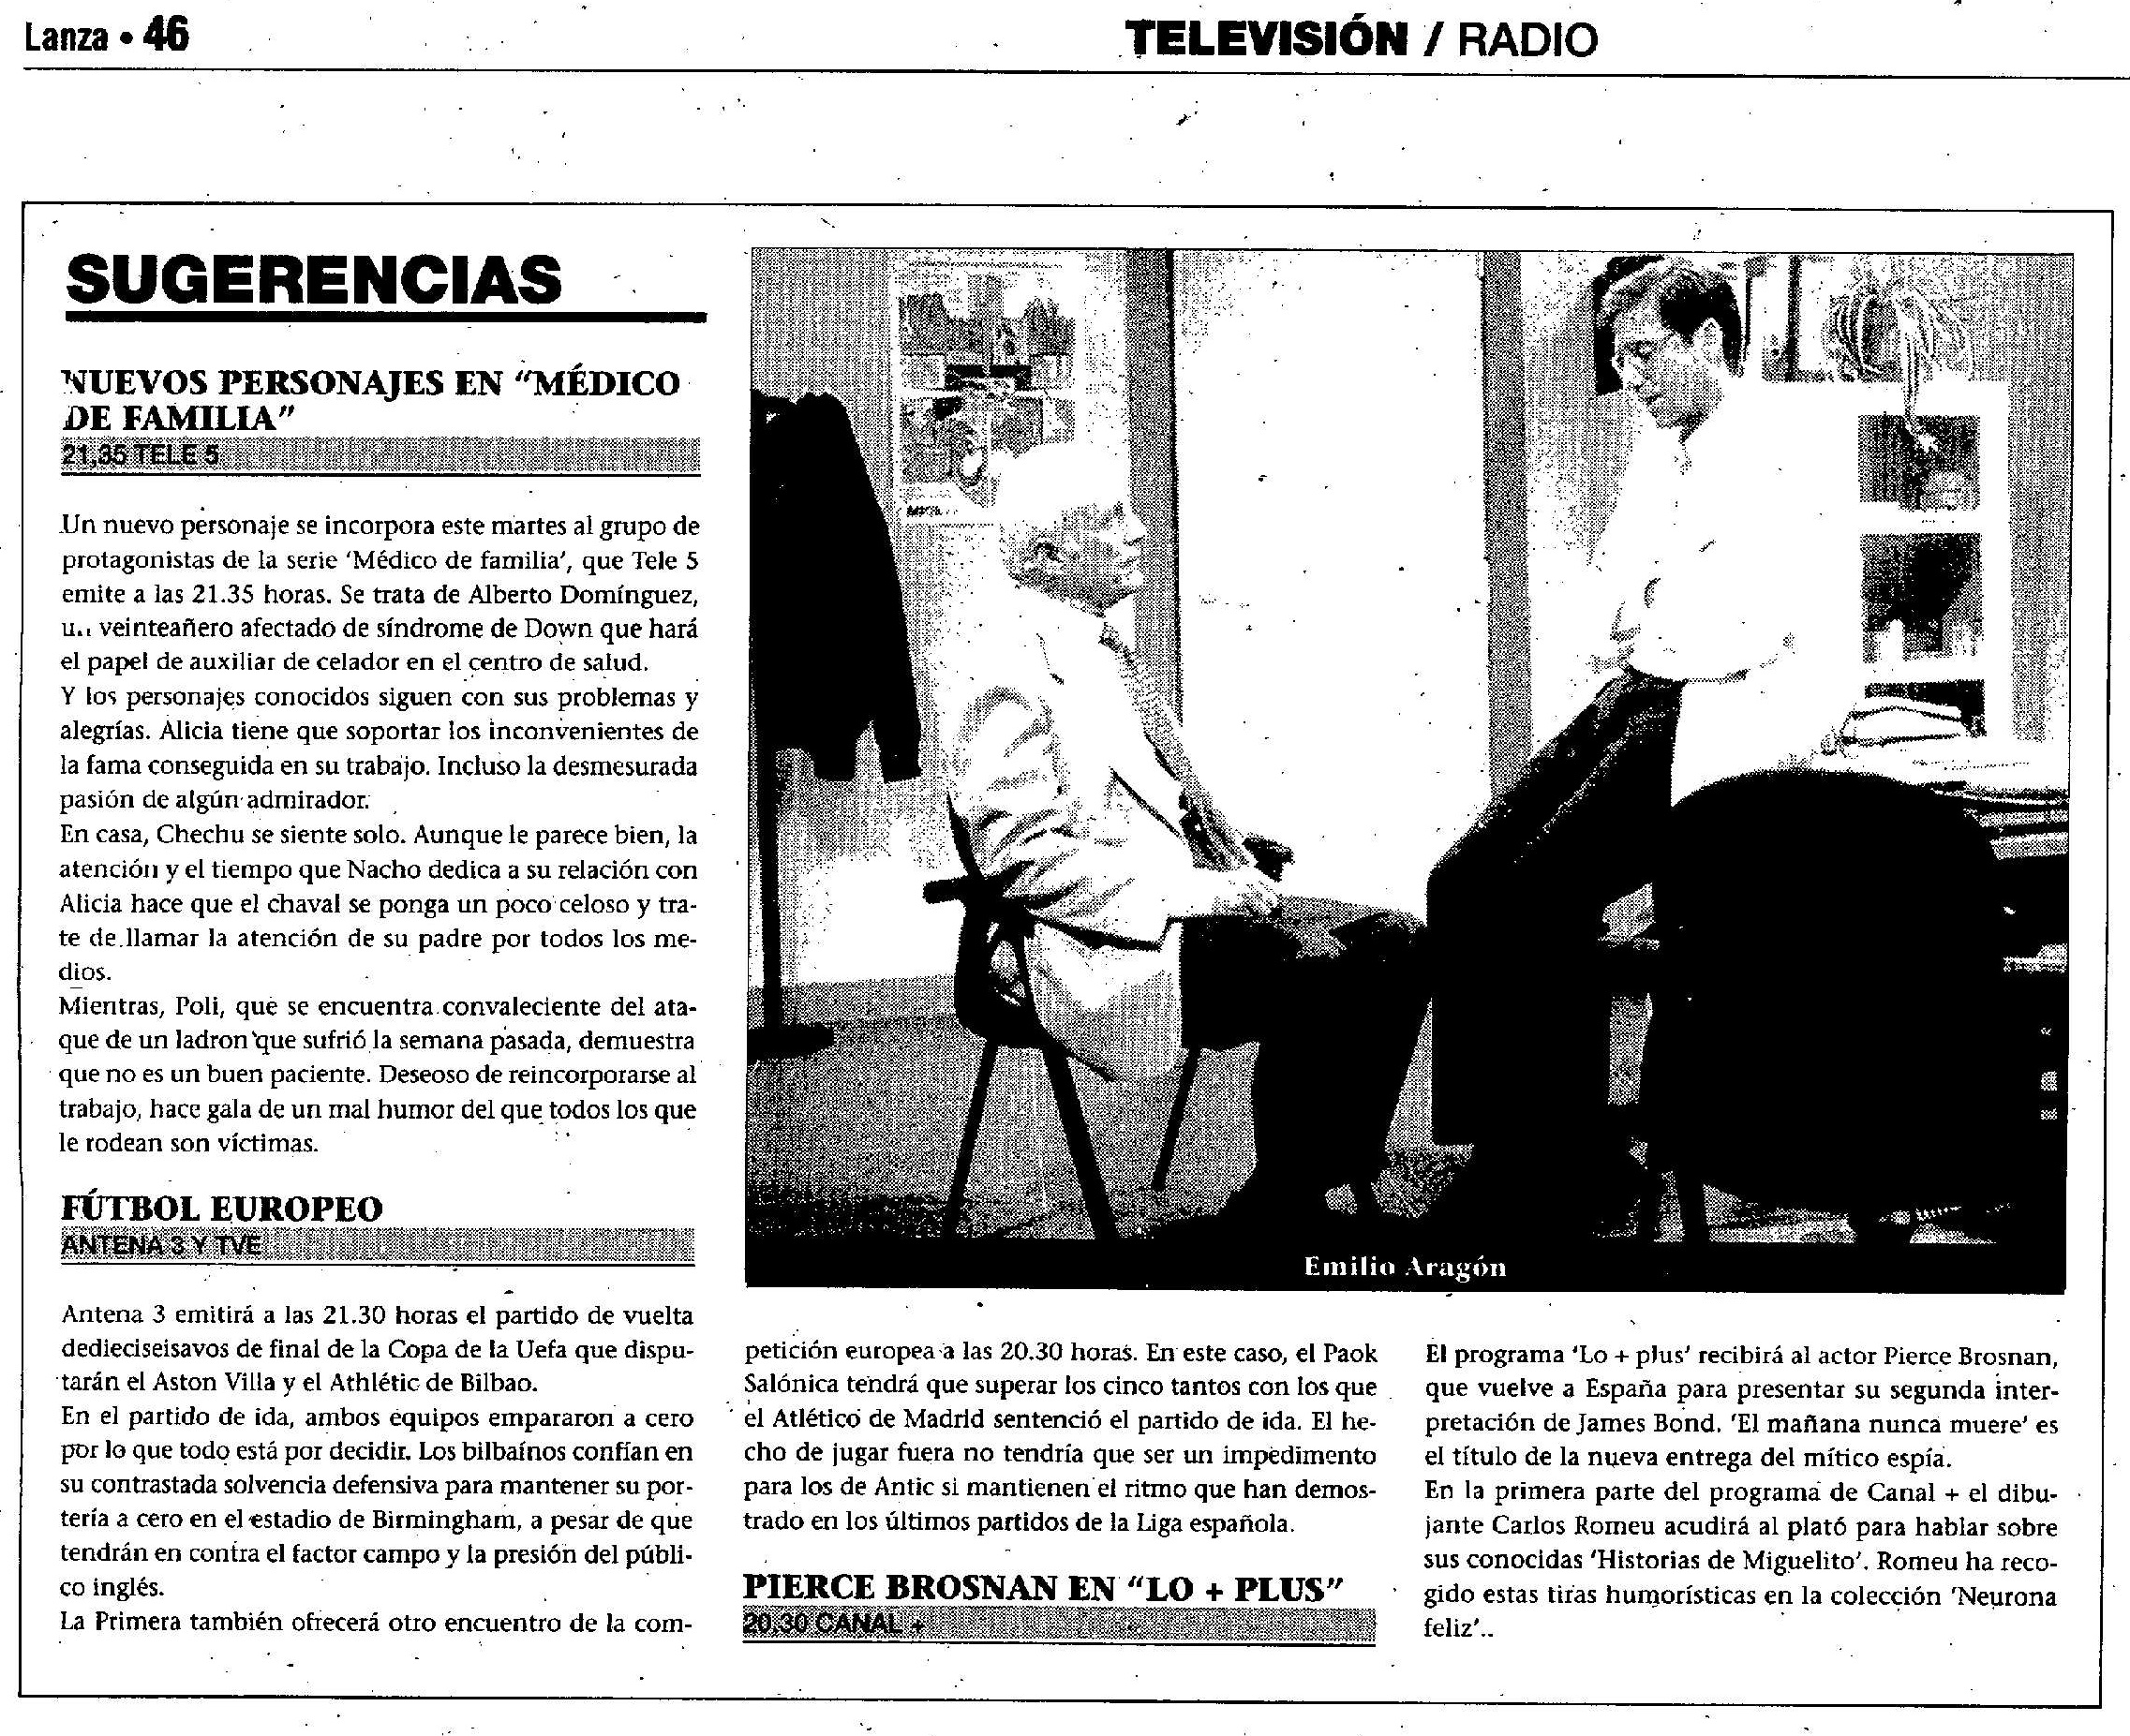 18 1997 11 04 Lanza Ciudad Real 46 LoMasPlus